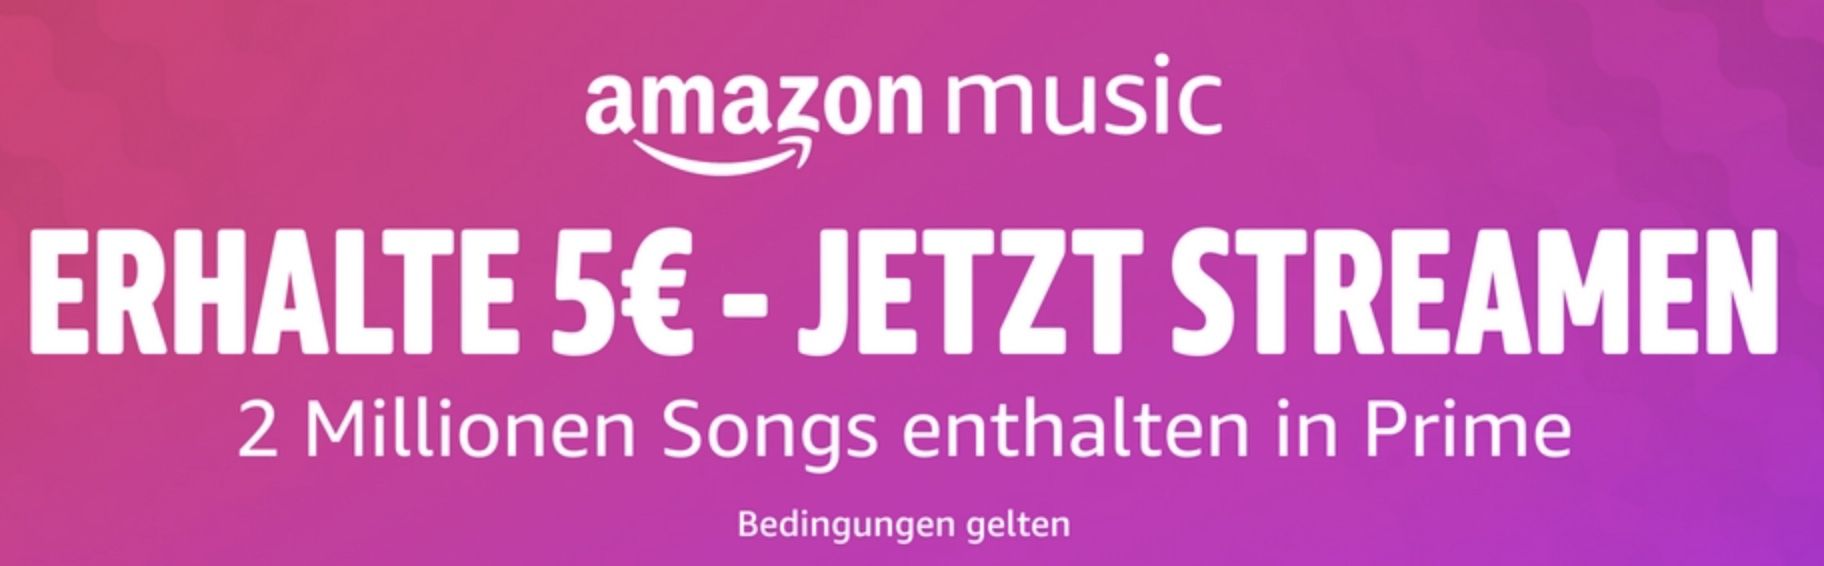 30 Sekunden (erstmalig) Amazon Prime Music streamen und 5€ Gutschein geschenkt bekommen